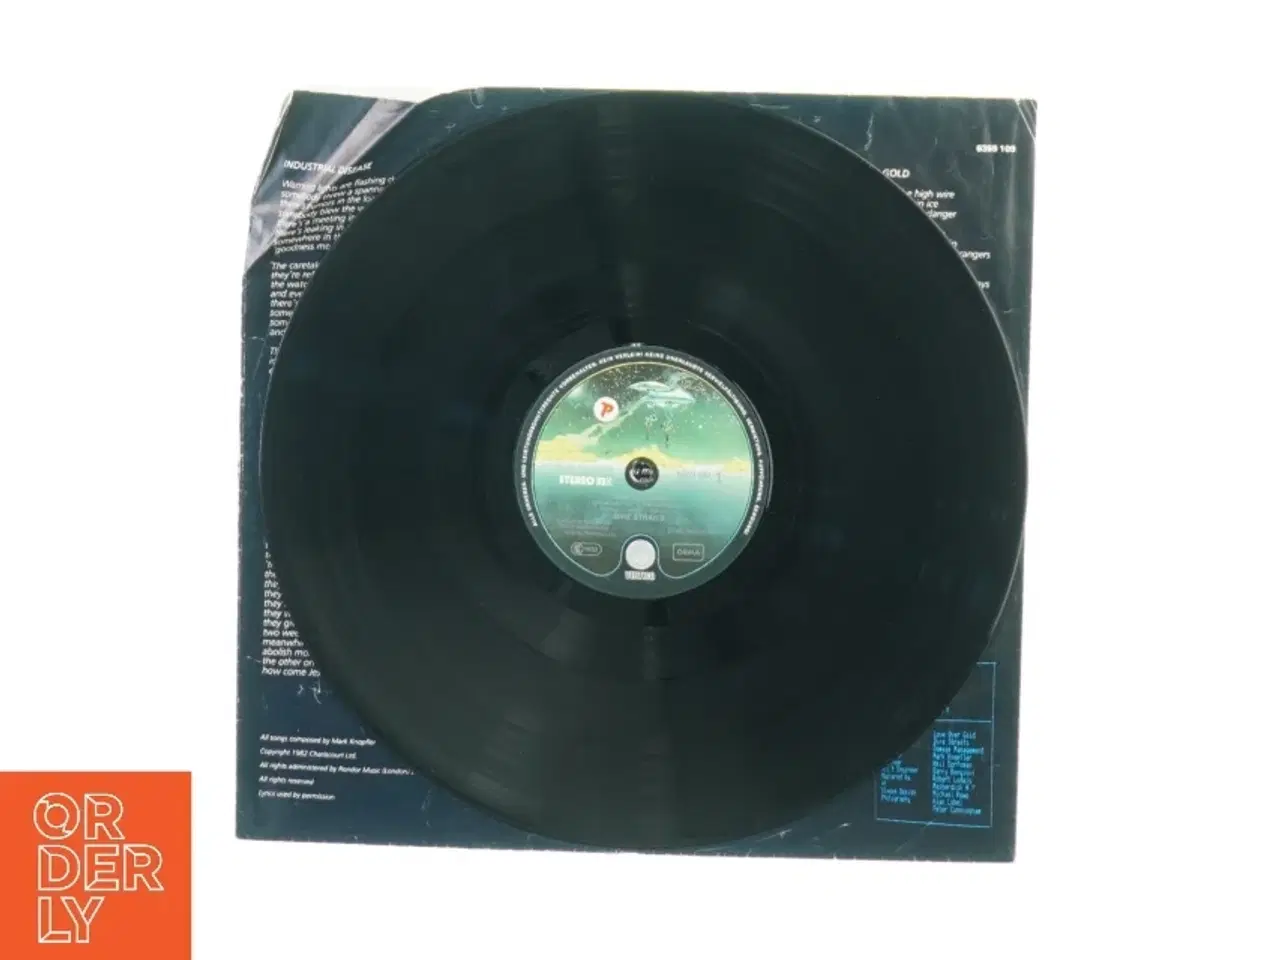 Billede 3 - Dire Straits: Love over gold (LP) fra Vertigo (str. 30 cm)